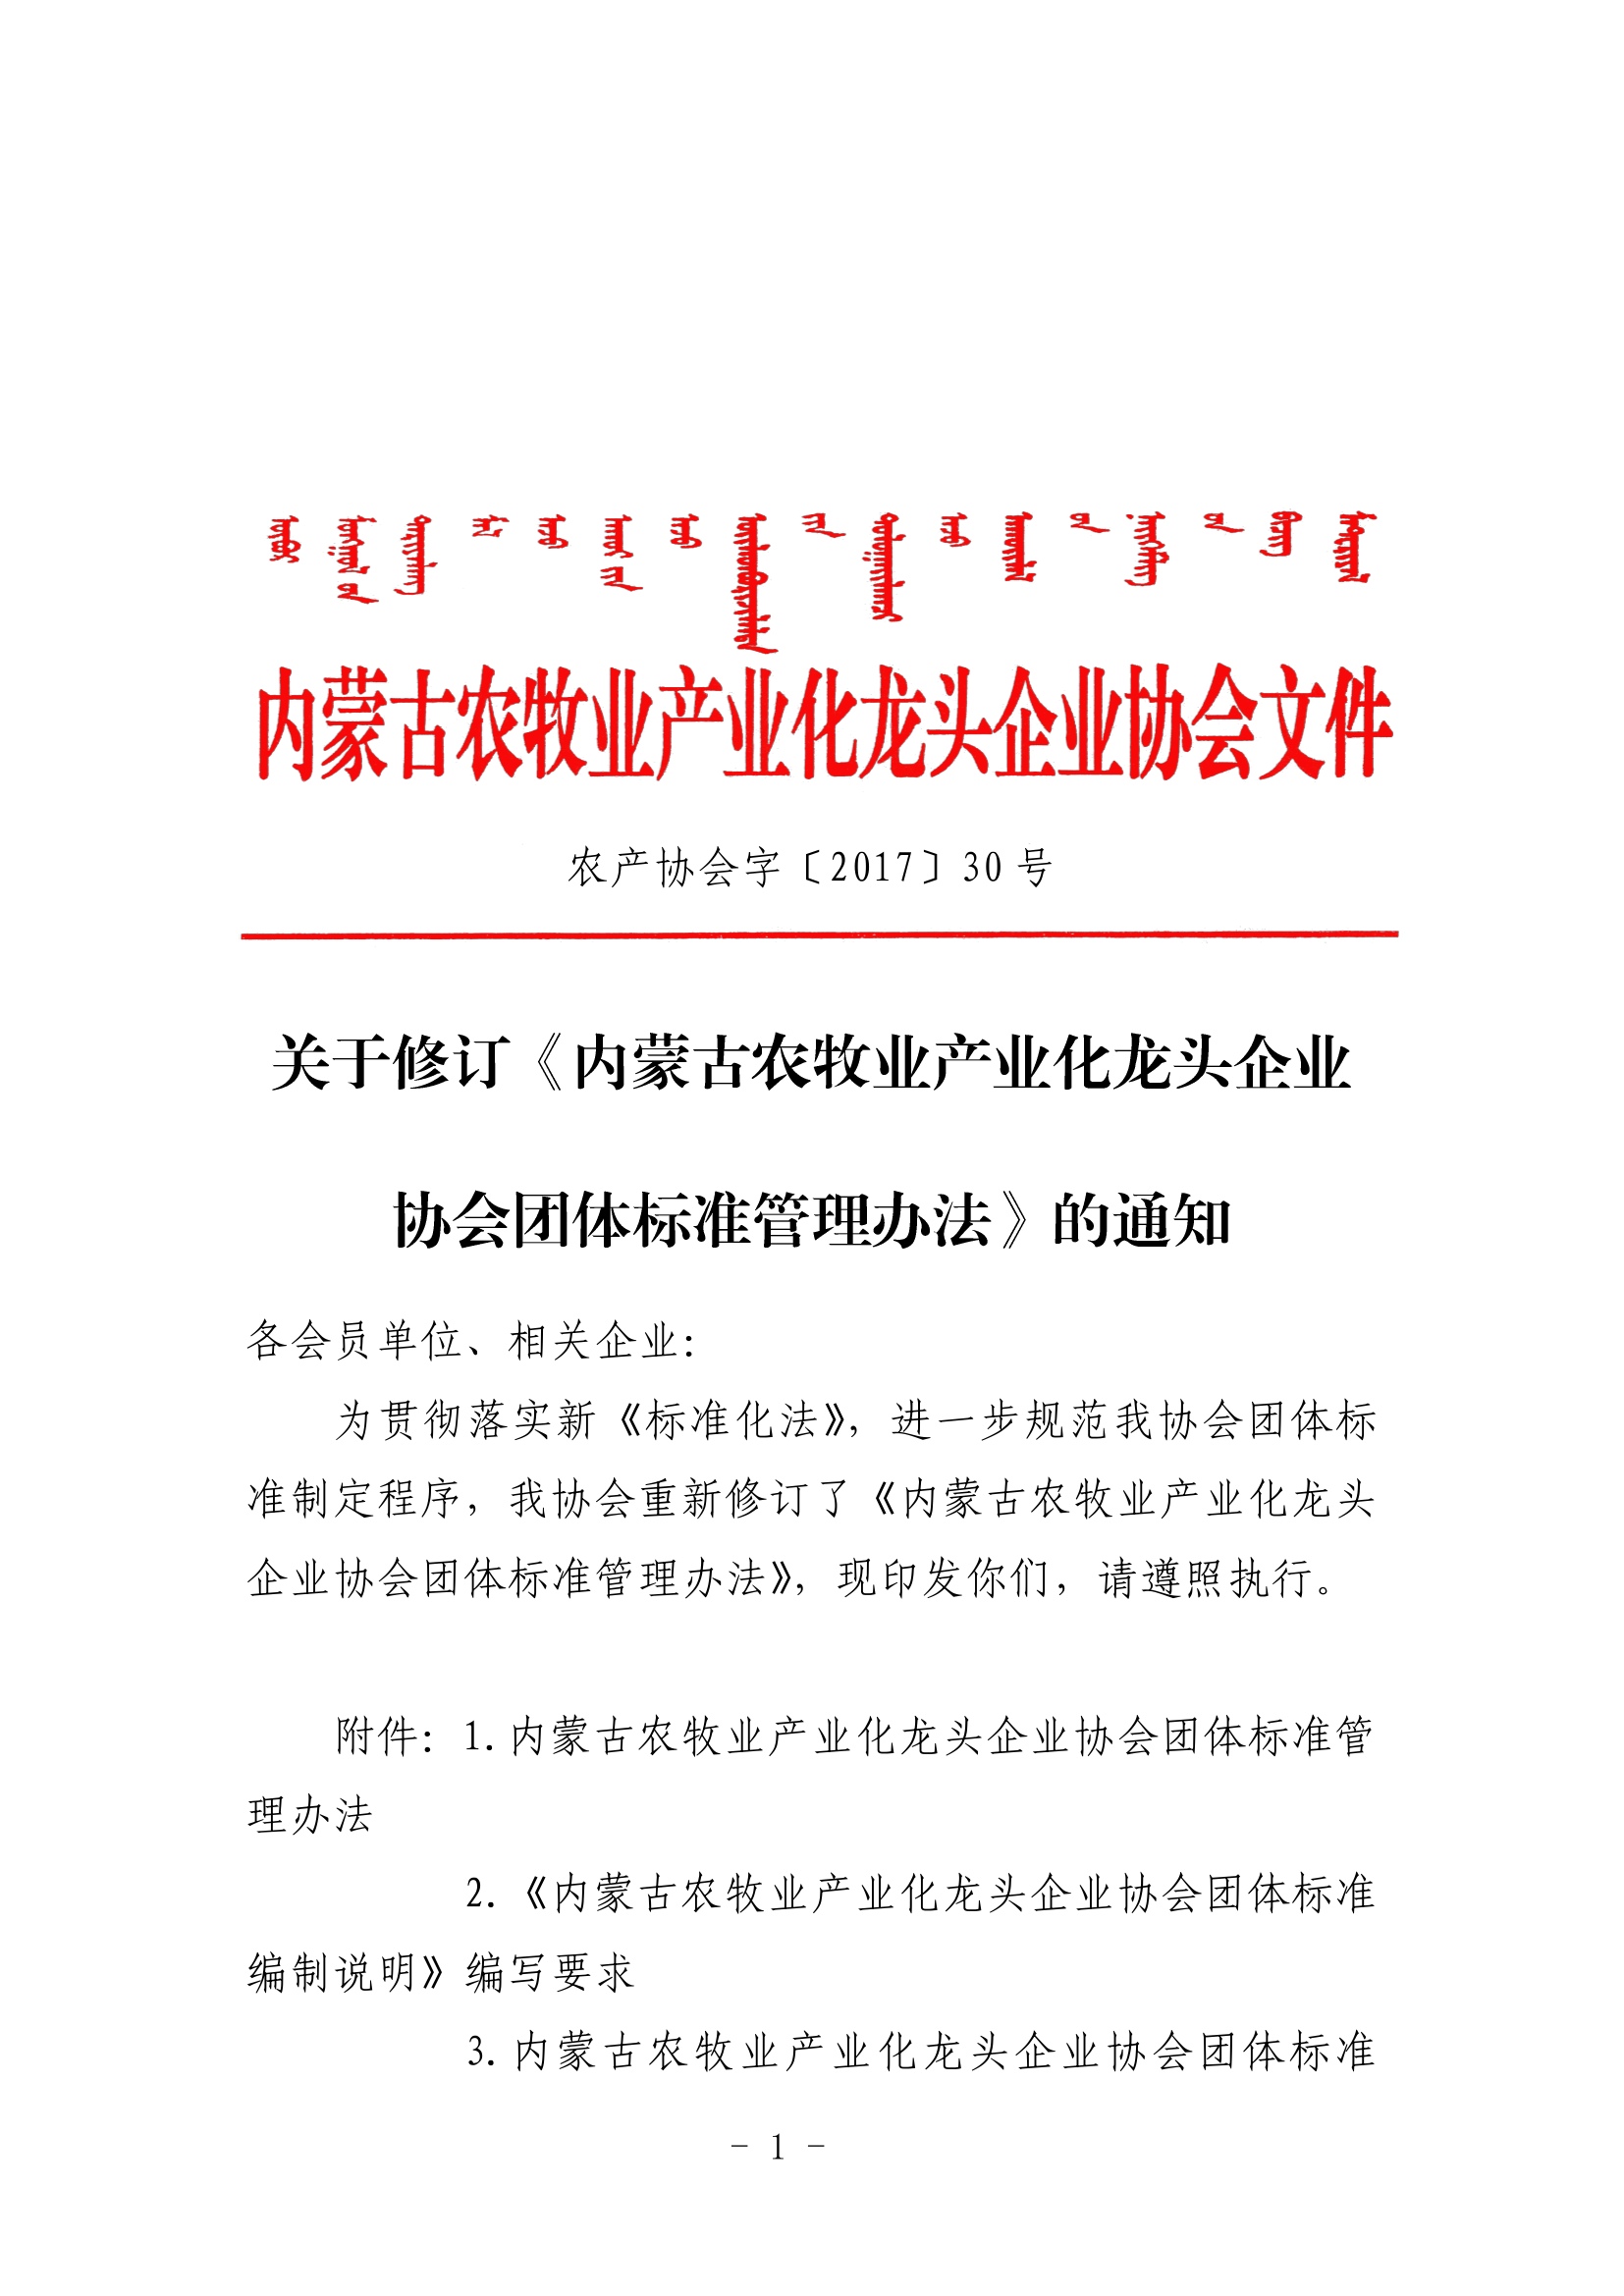 关于修订《内蒙古农牧业产业化龙头企业协会团体标准管理办法》的通知